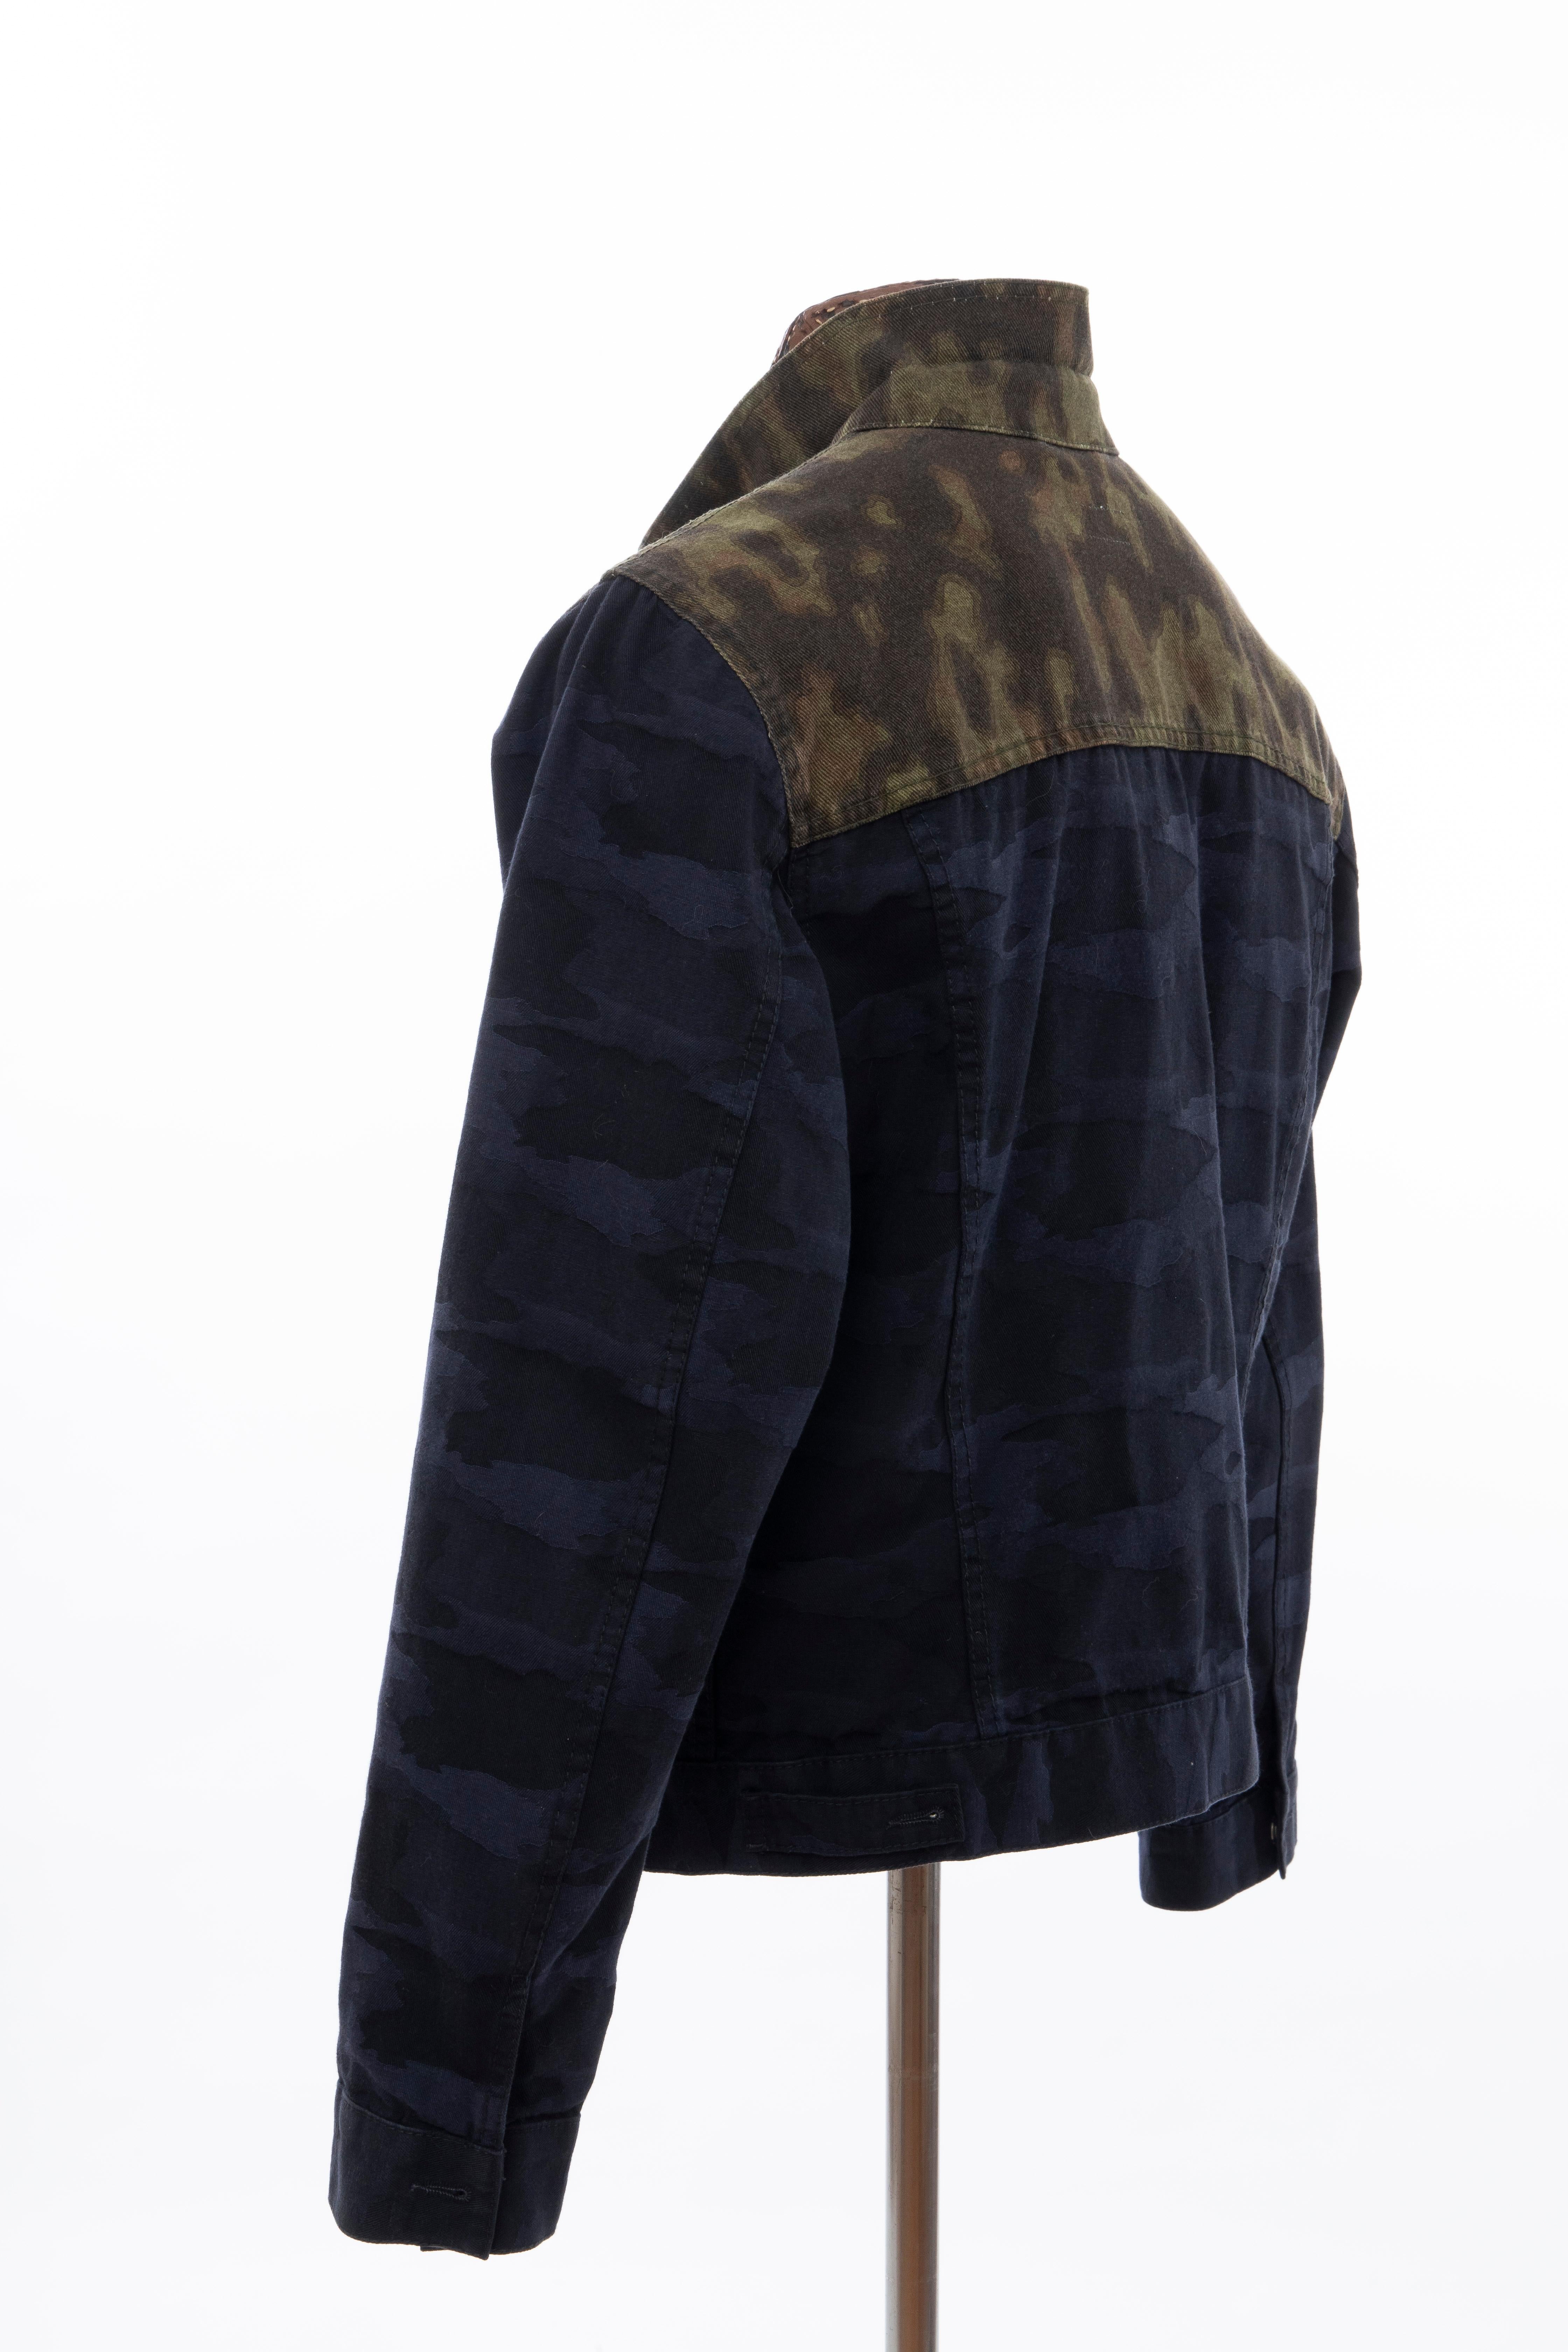 Dries van Noten Runway Men's Cotton Camouflage Chore Jacket, Spring 2013 5